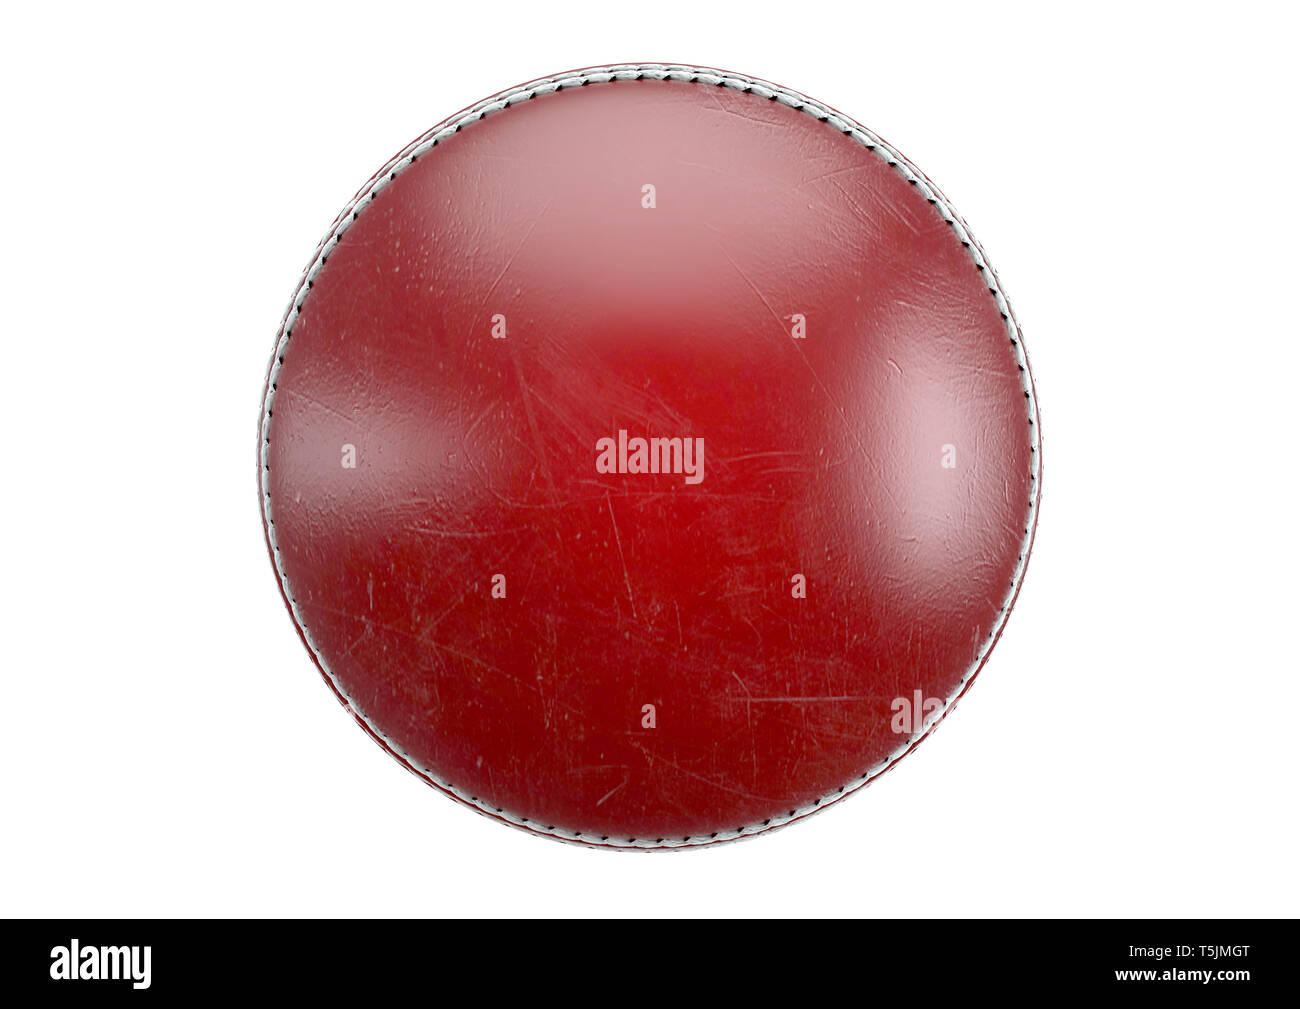 Seitenansicht eines roten Cricket Ball auf einem isolierten Hintergrund - 3D-Rendering Stockfoto